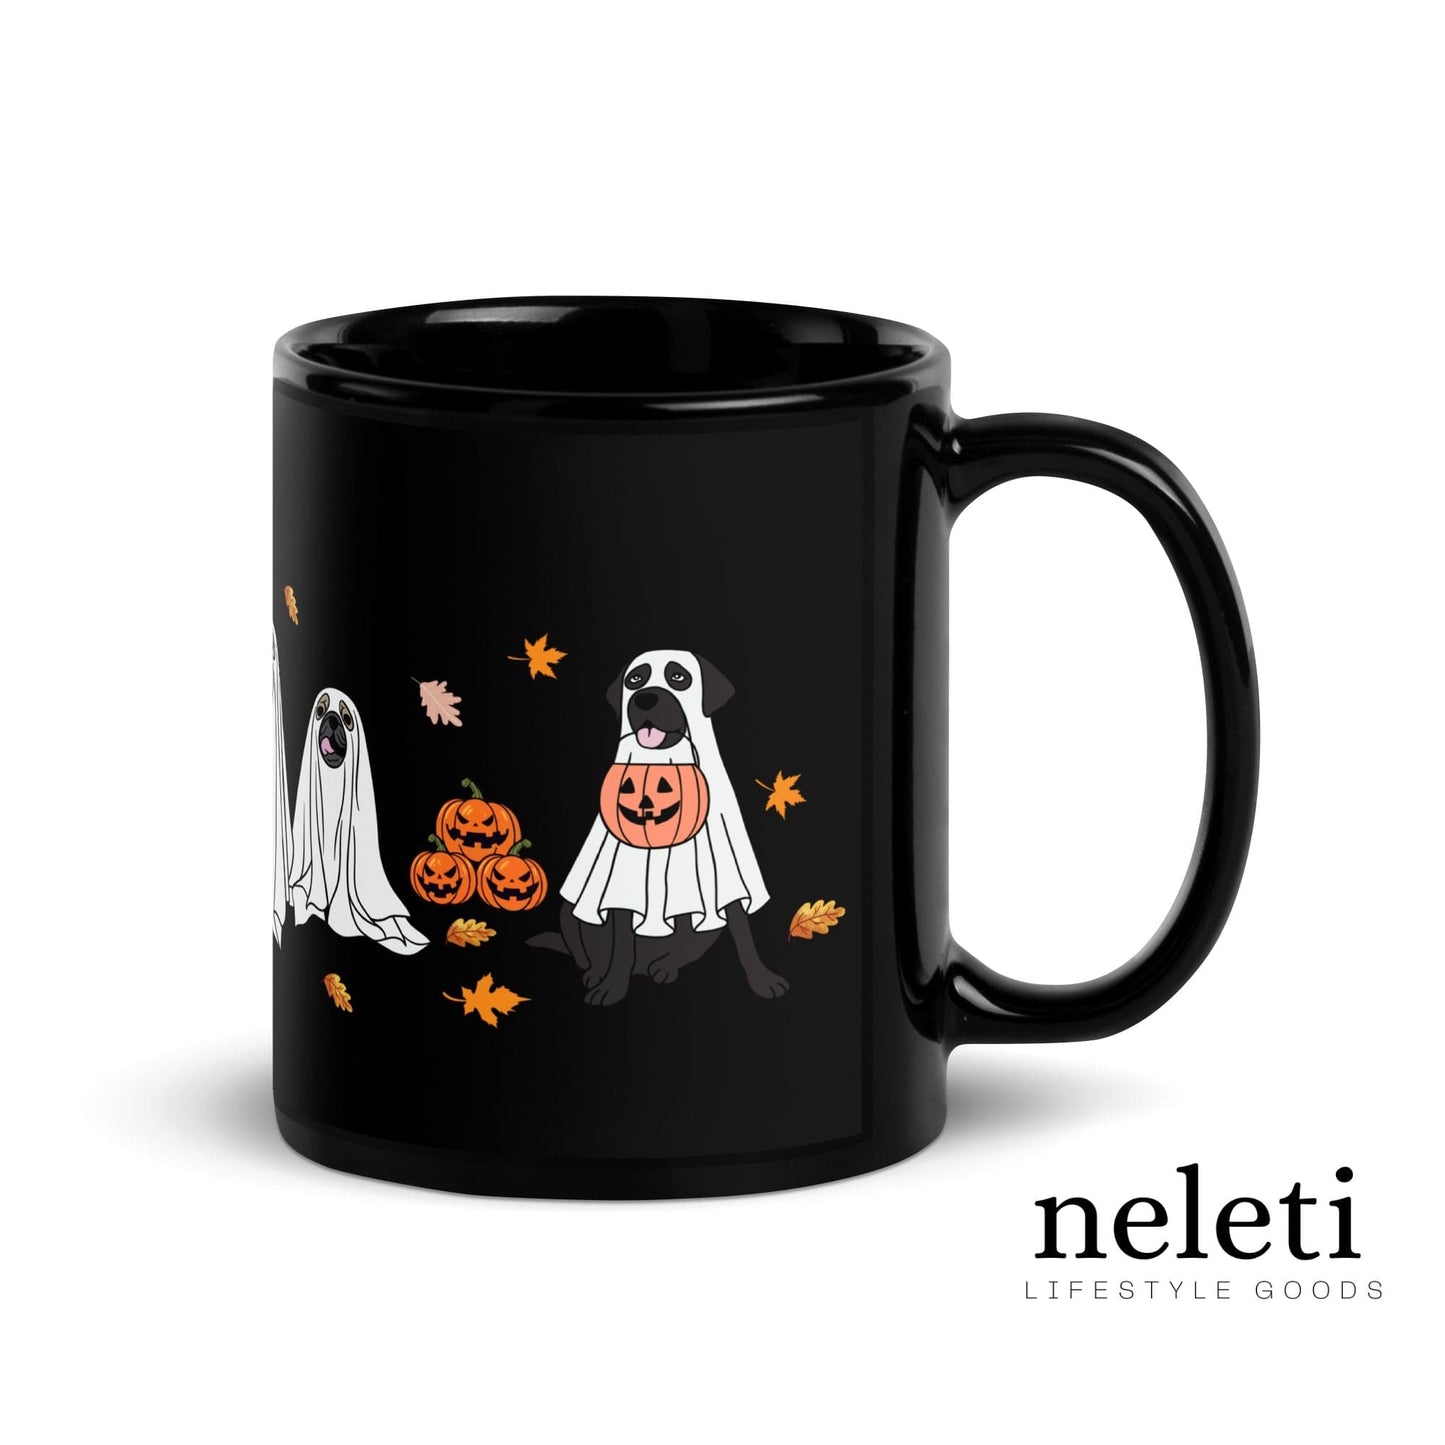 Festive black Halloween mug with unique dog lover's design elements